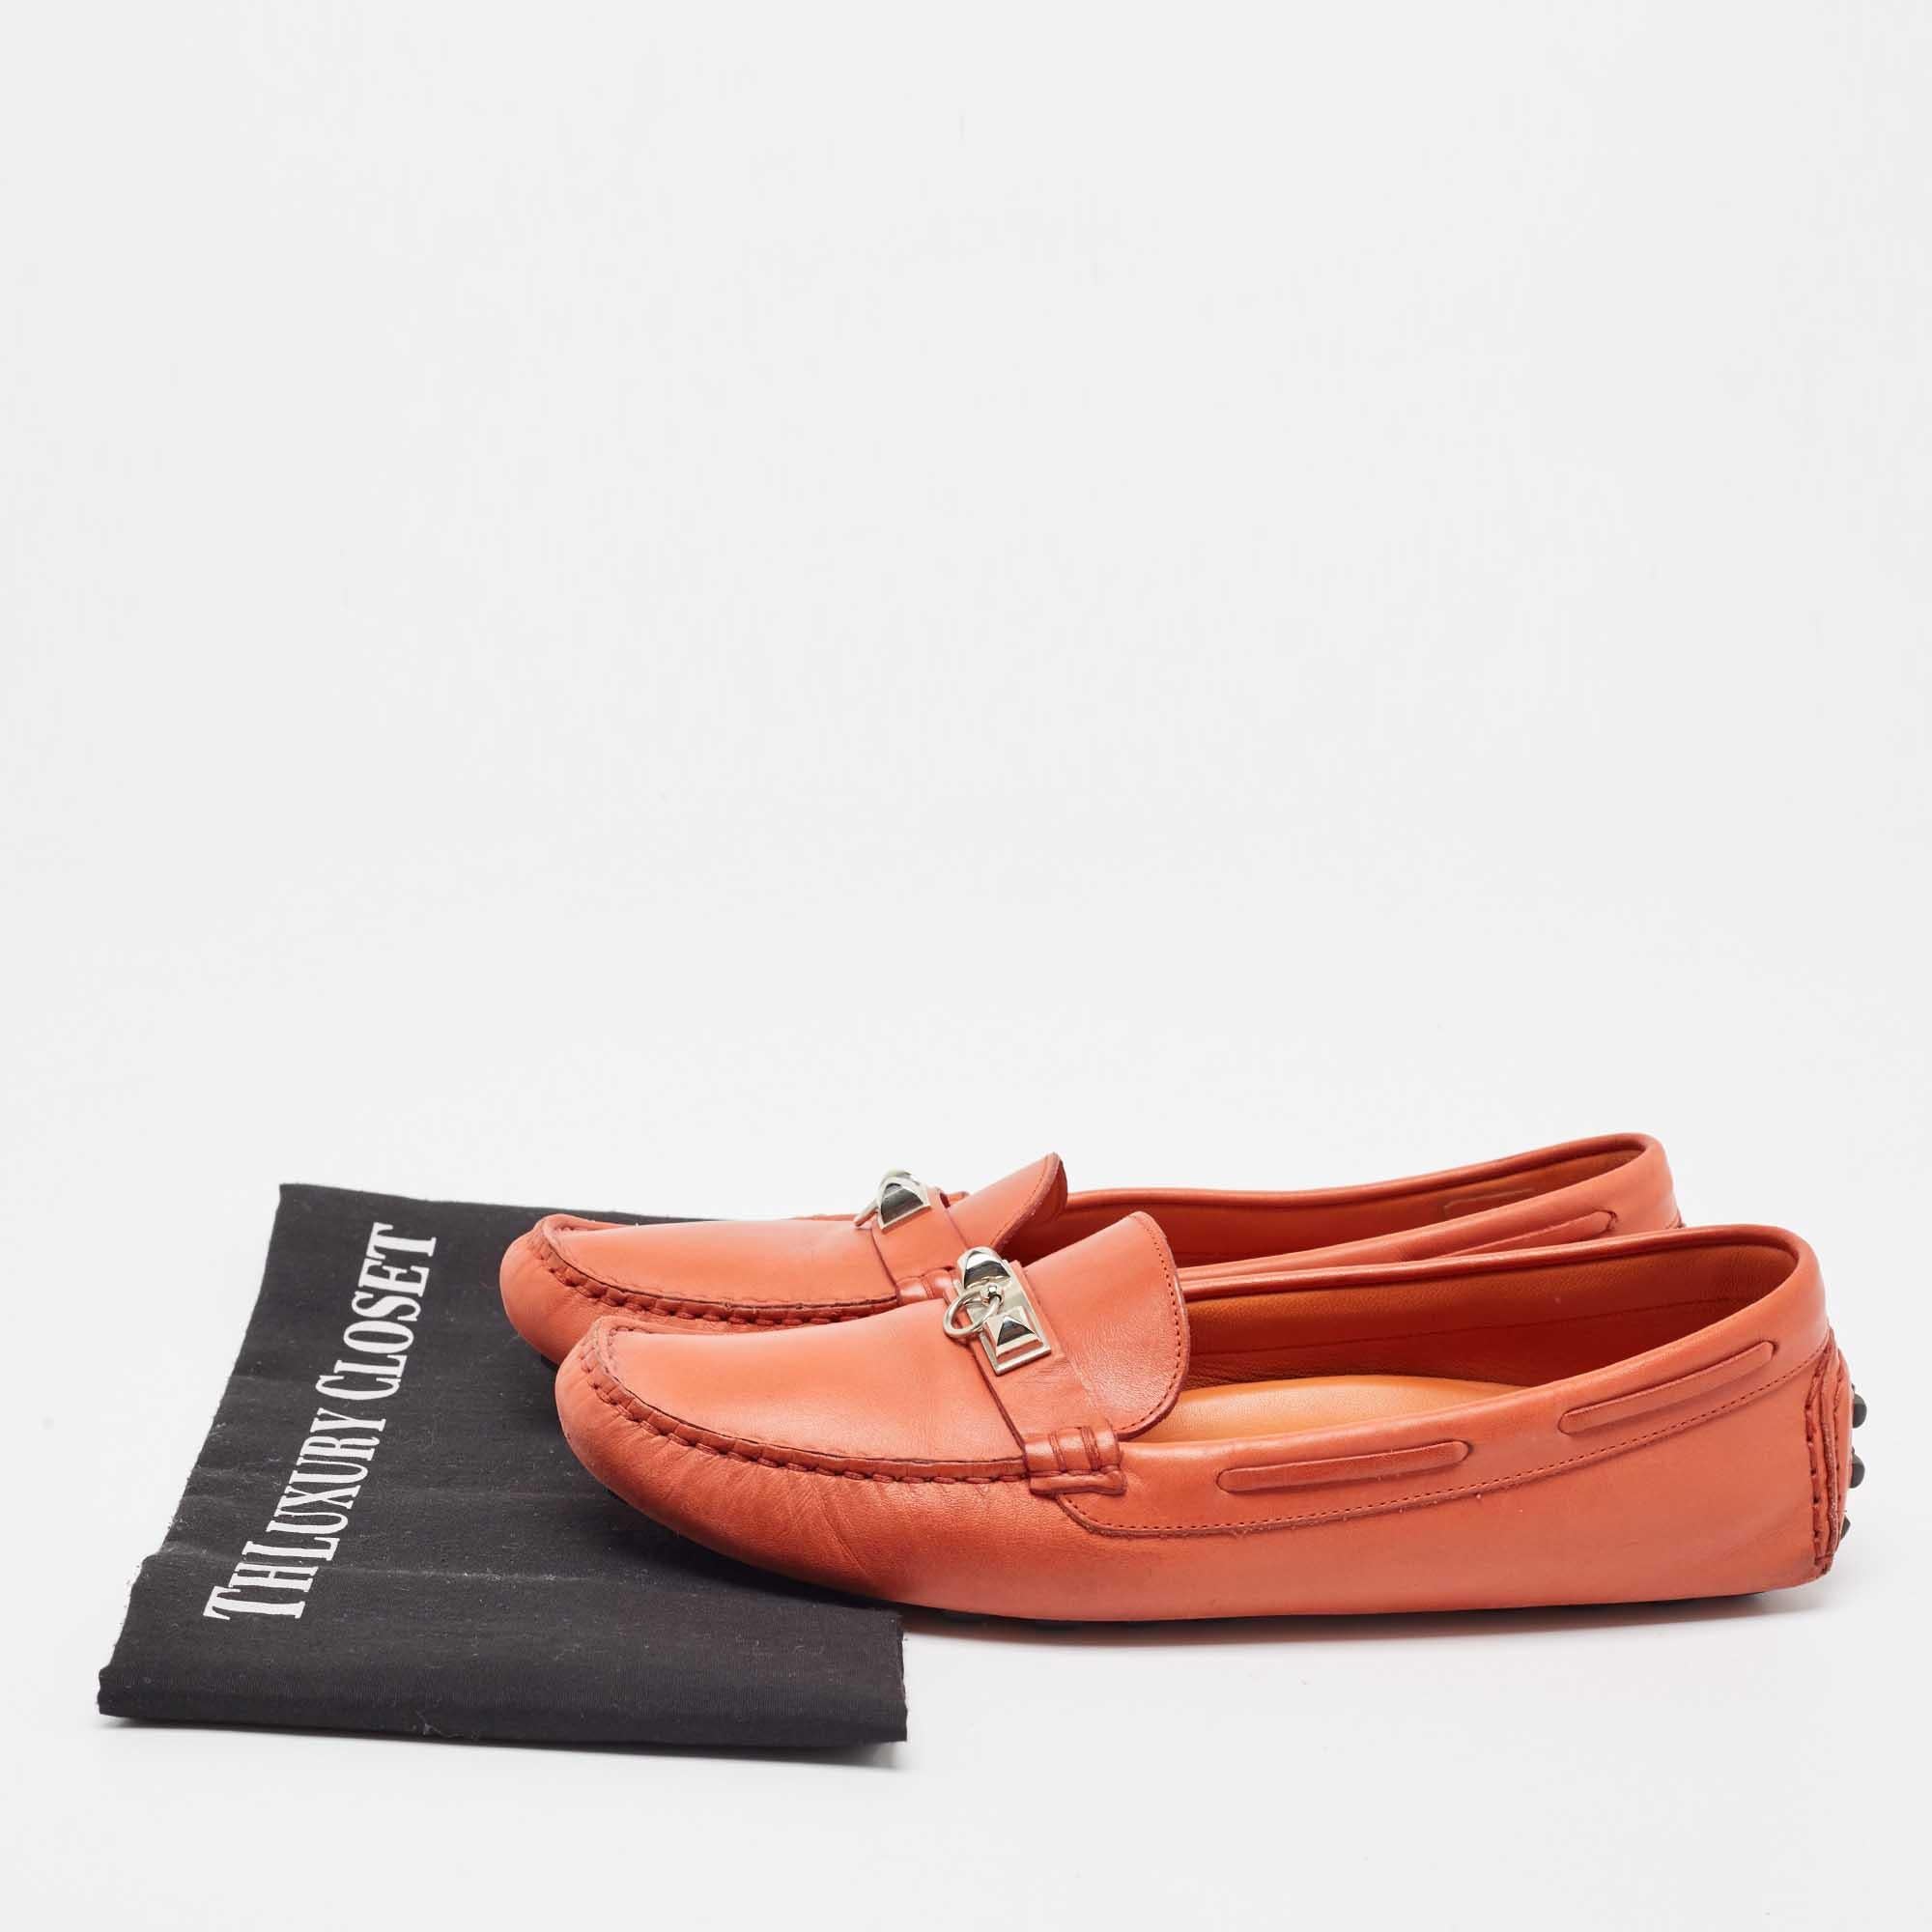 Hermes Orange Leather Irving Slip On Loafers Size 38 5